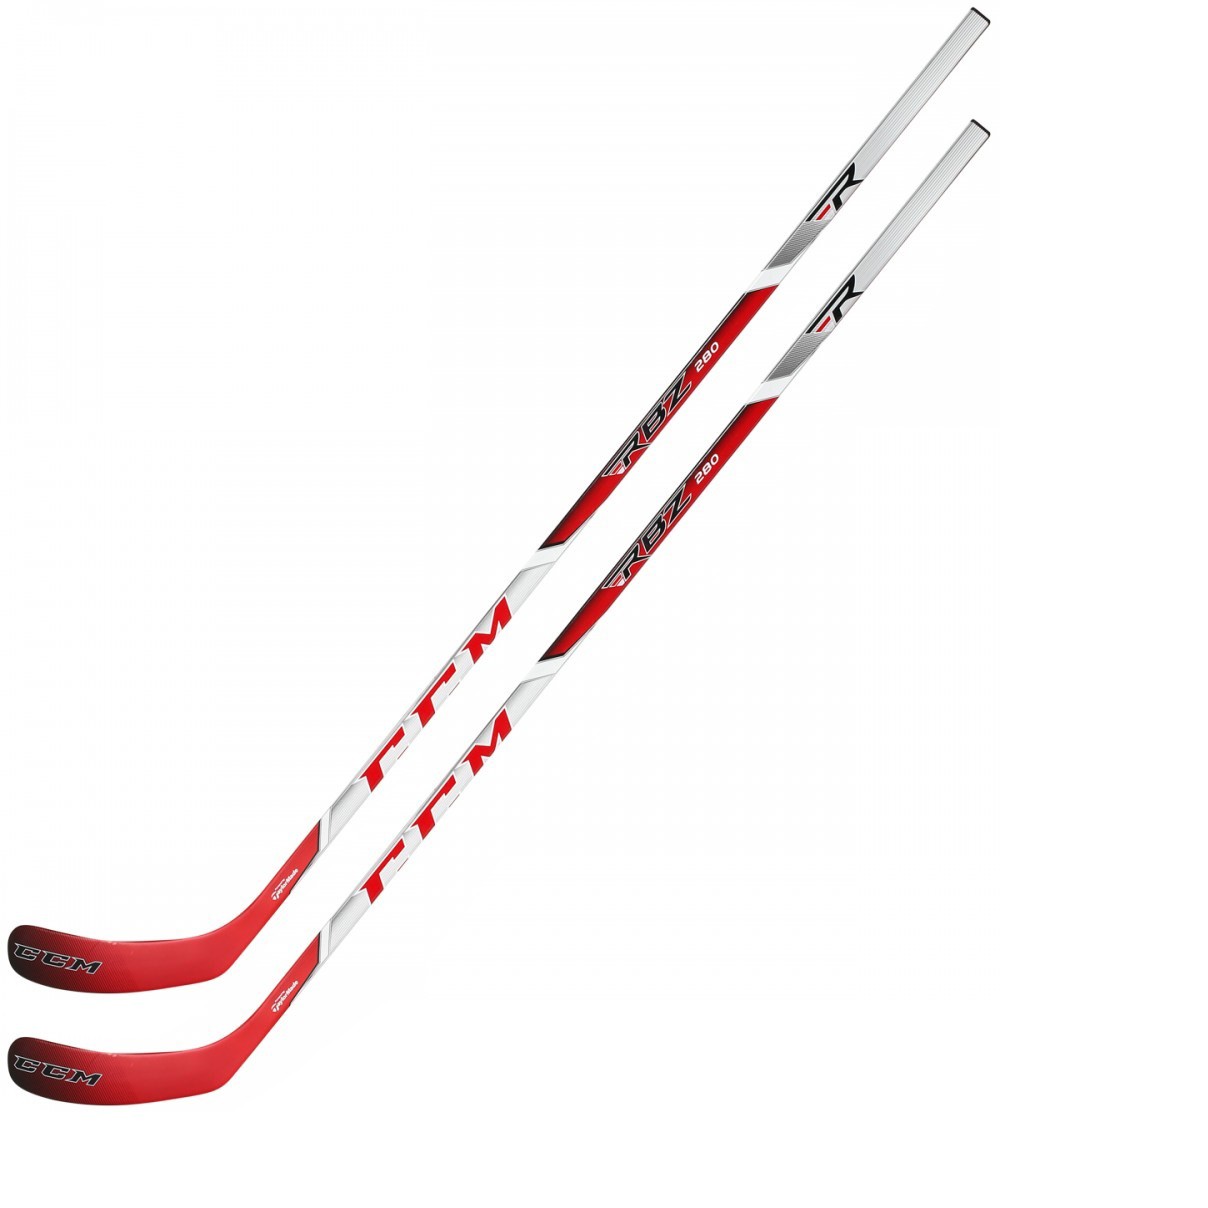 2 Pack CCM RBZ 280 Ice Hockey Sticks Senior Flex